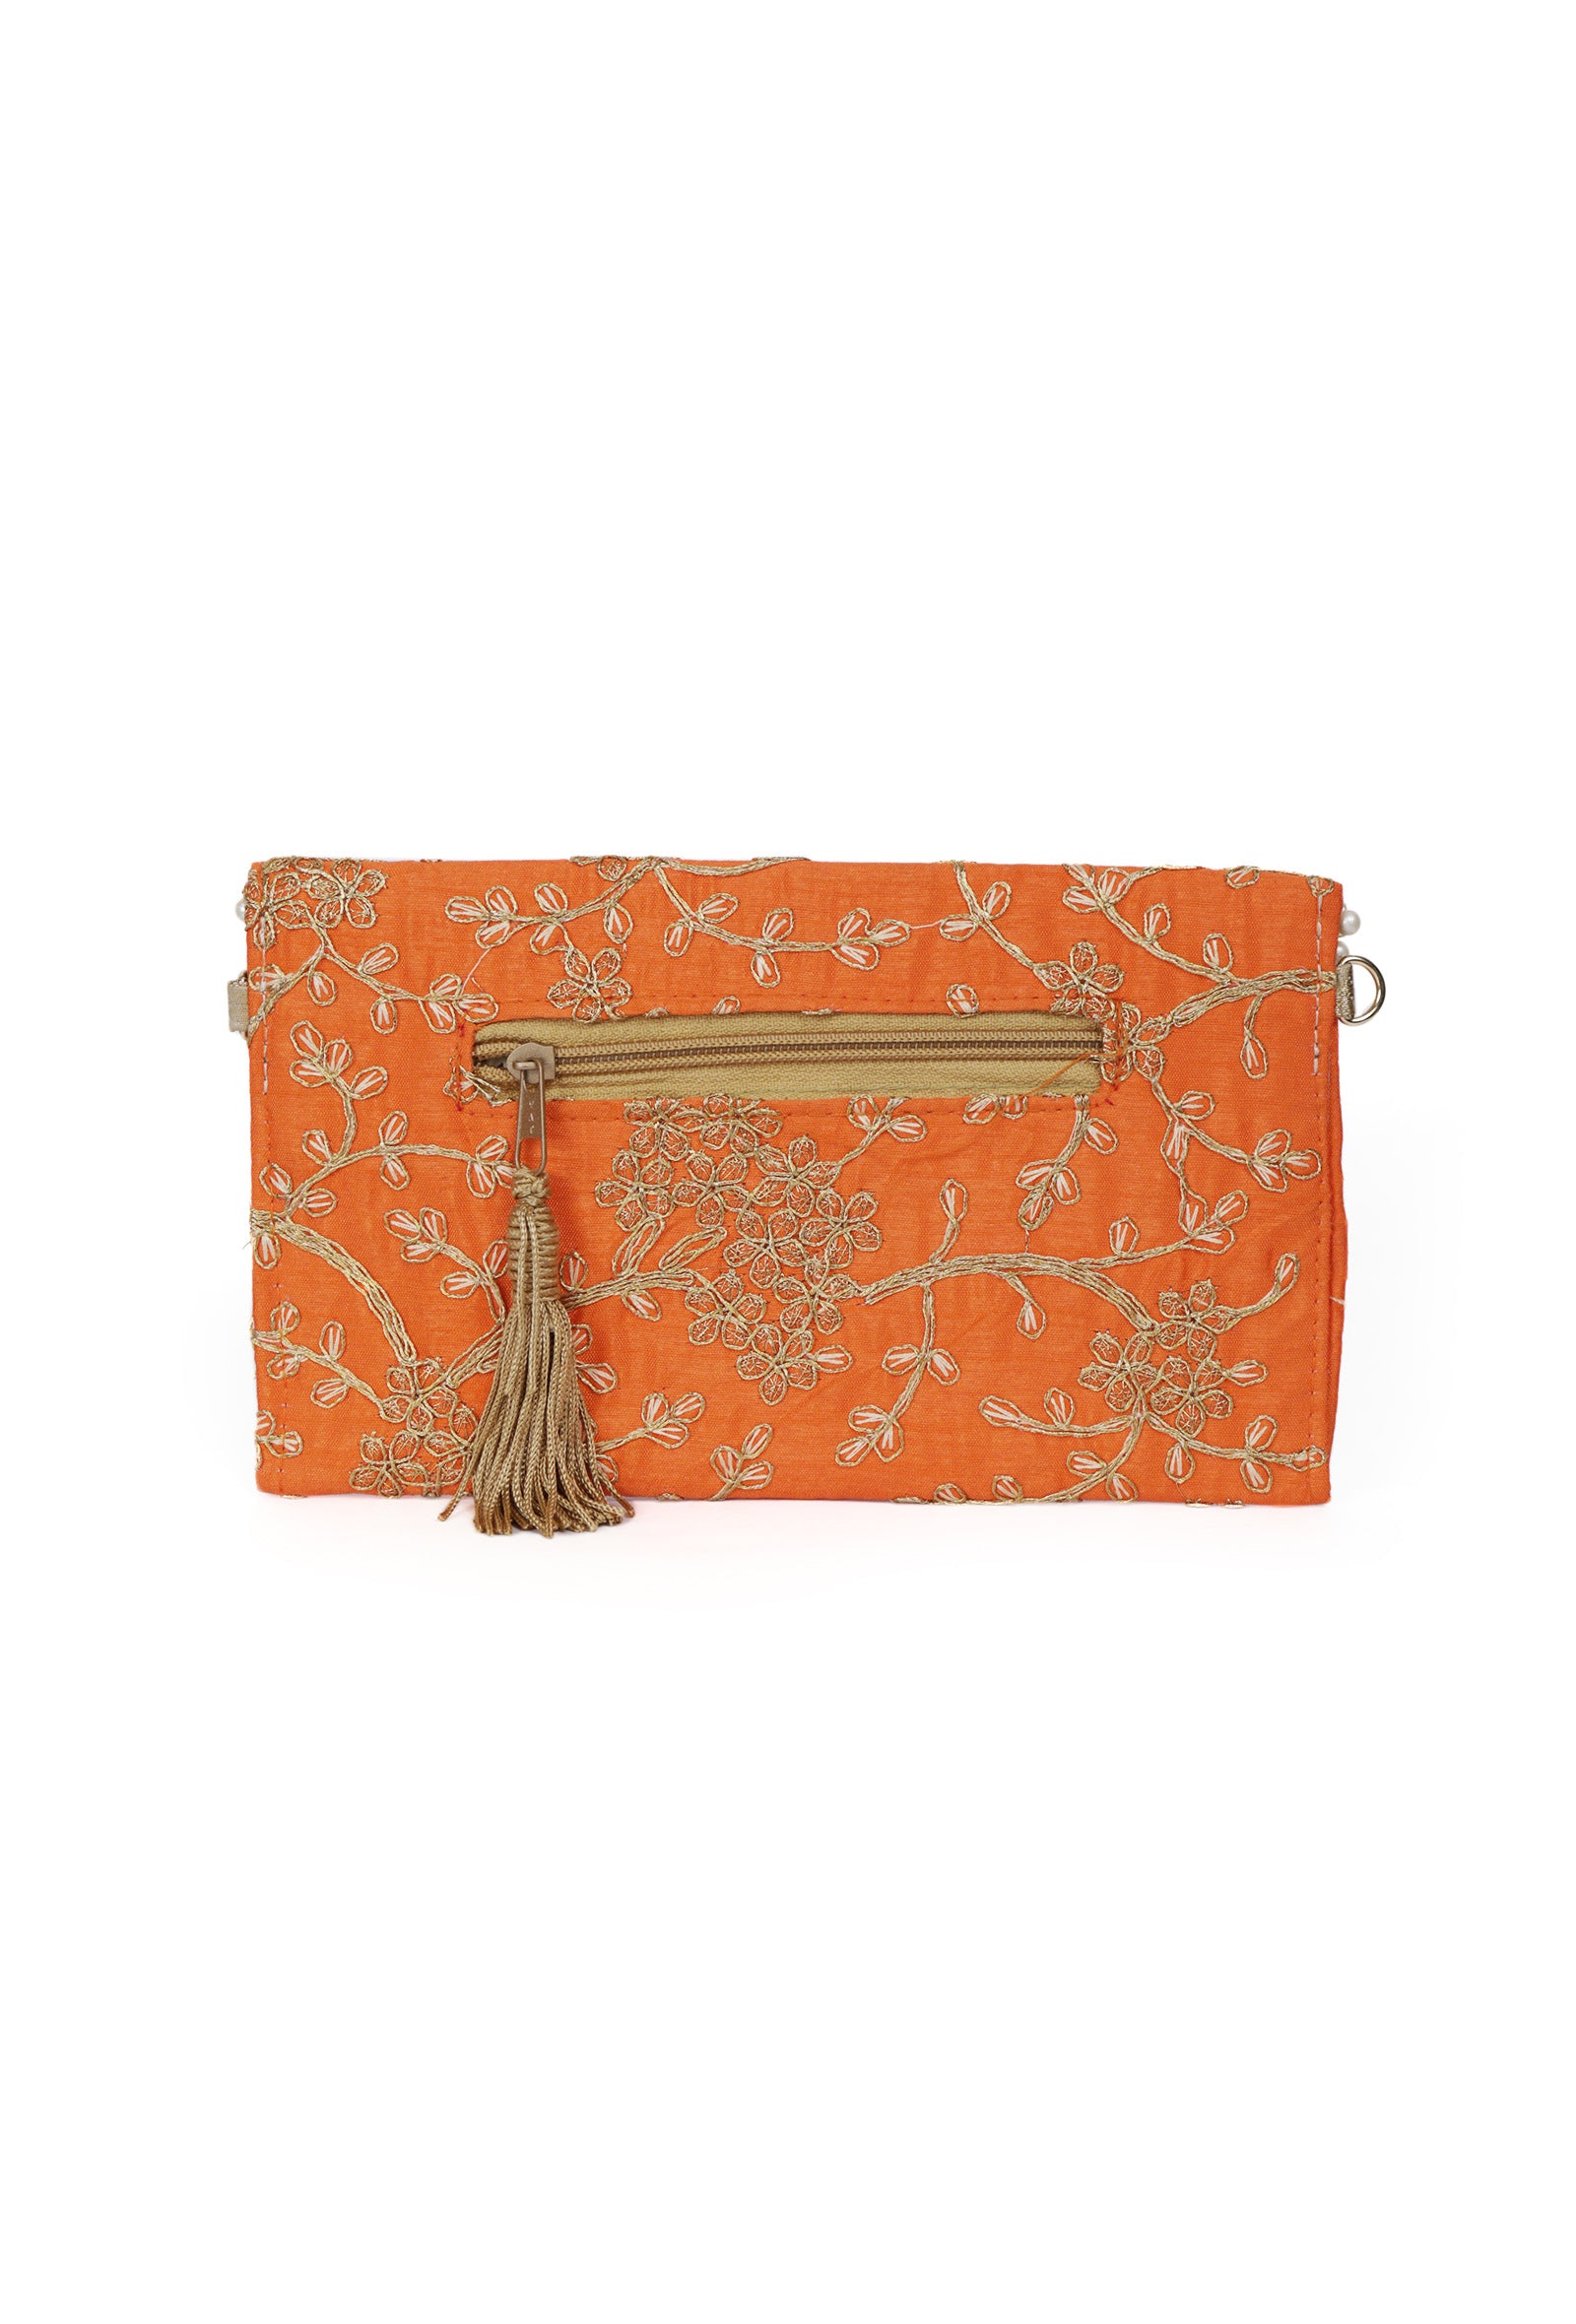 Vivid Orange Zari Embroidered Silk Envelope Clutch